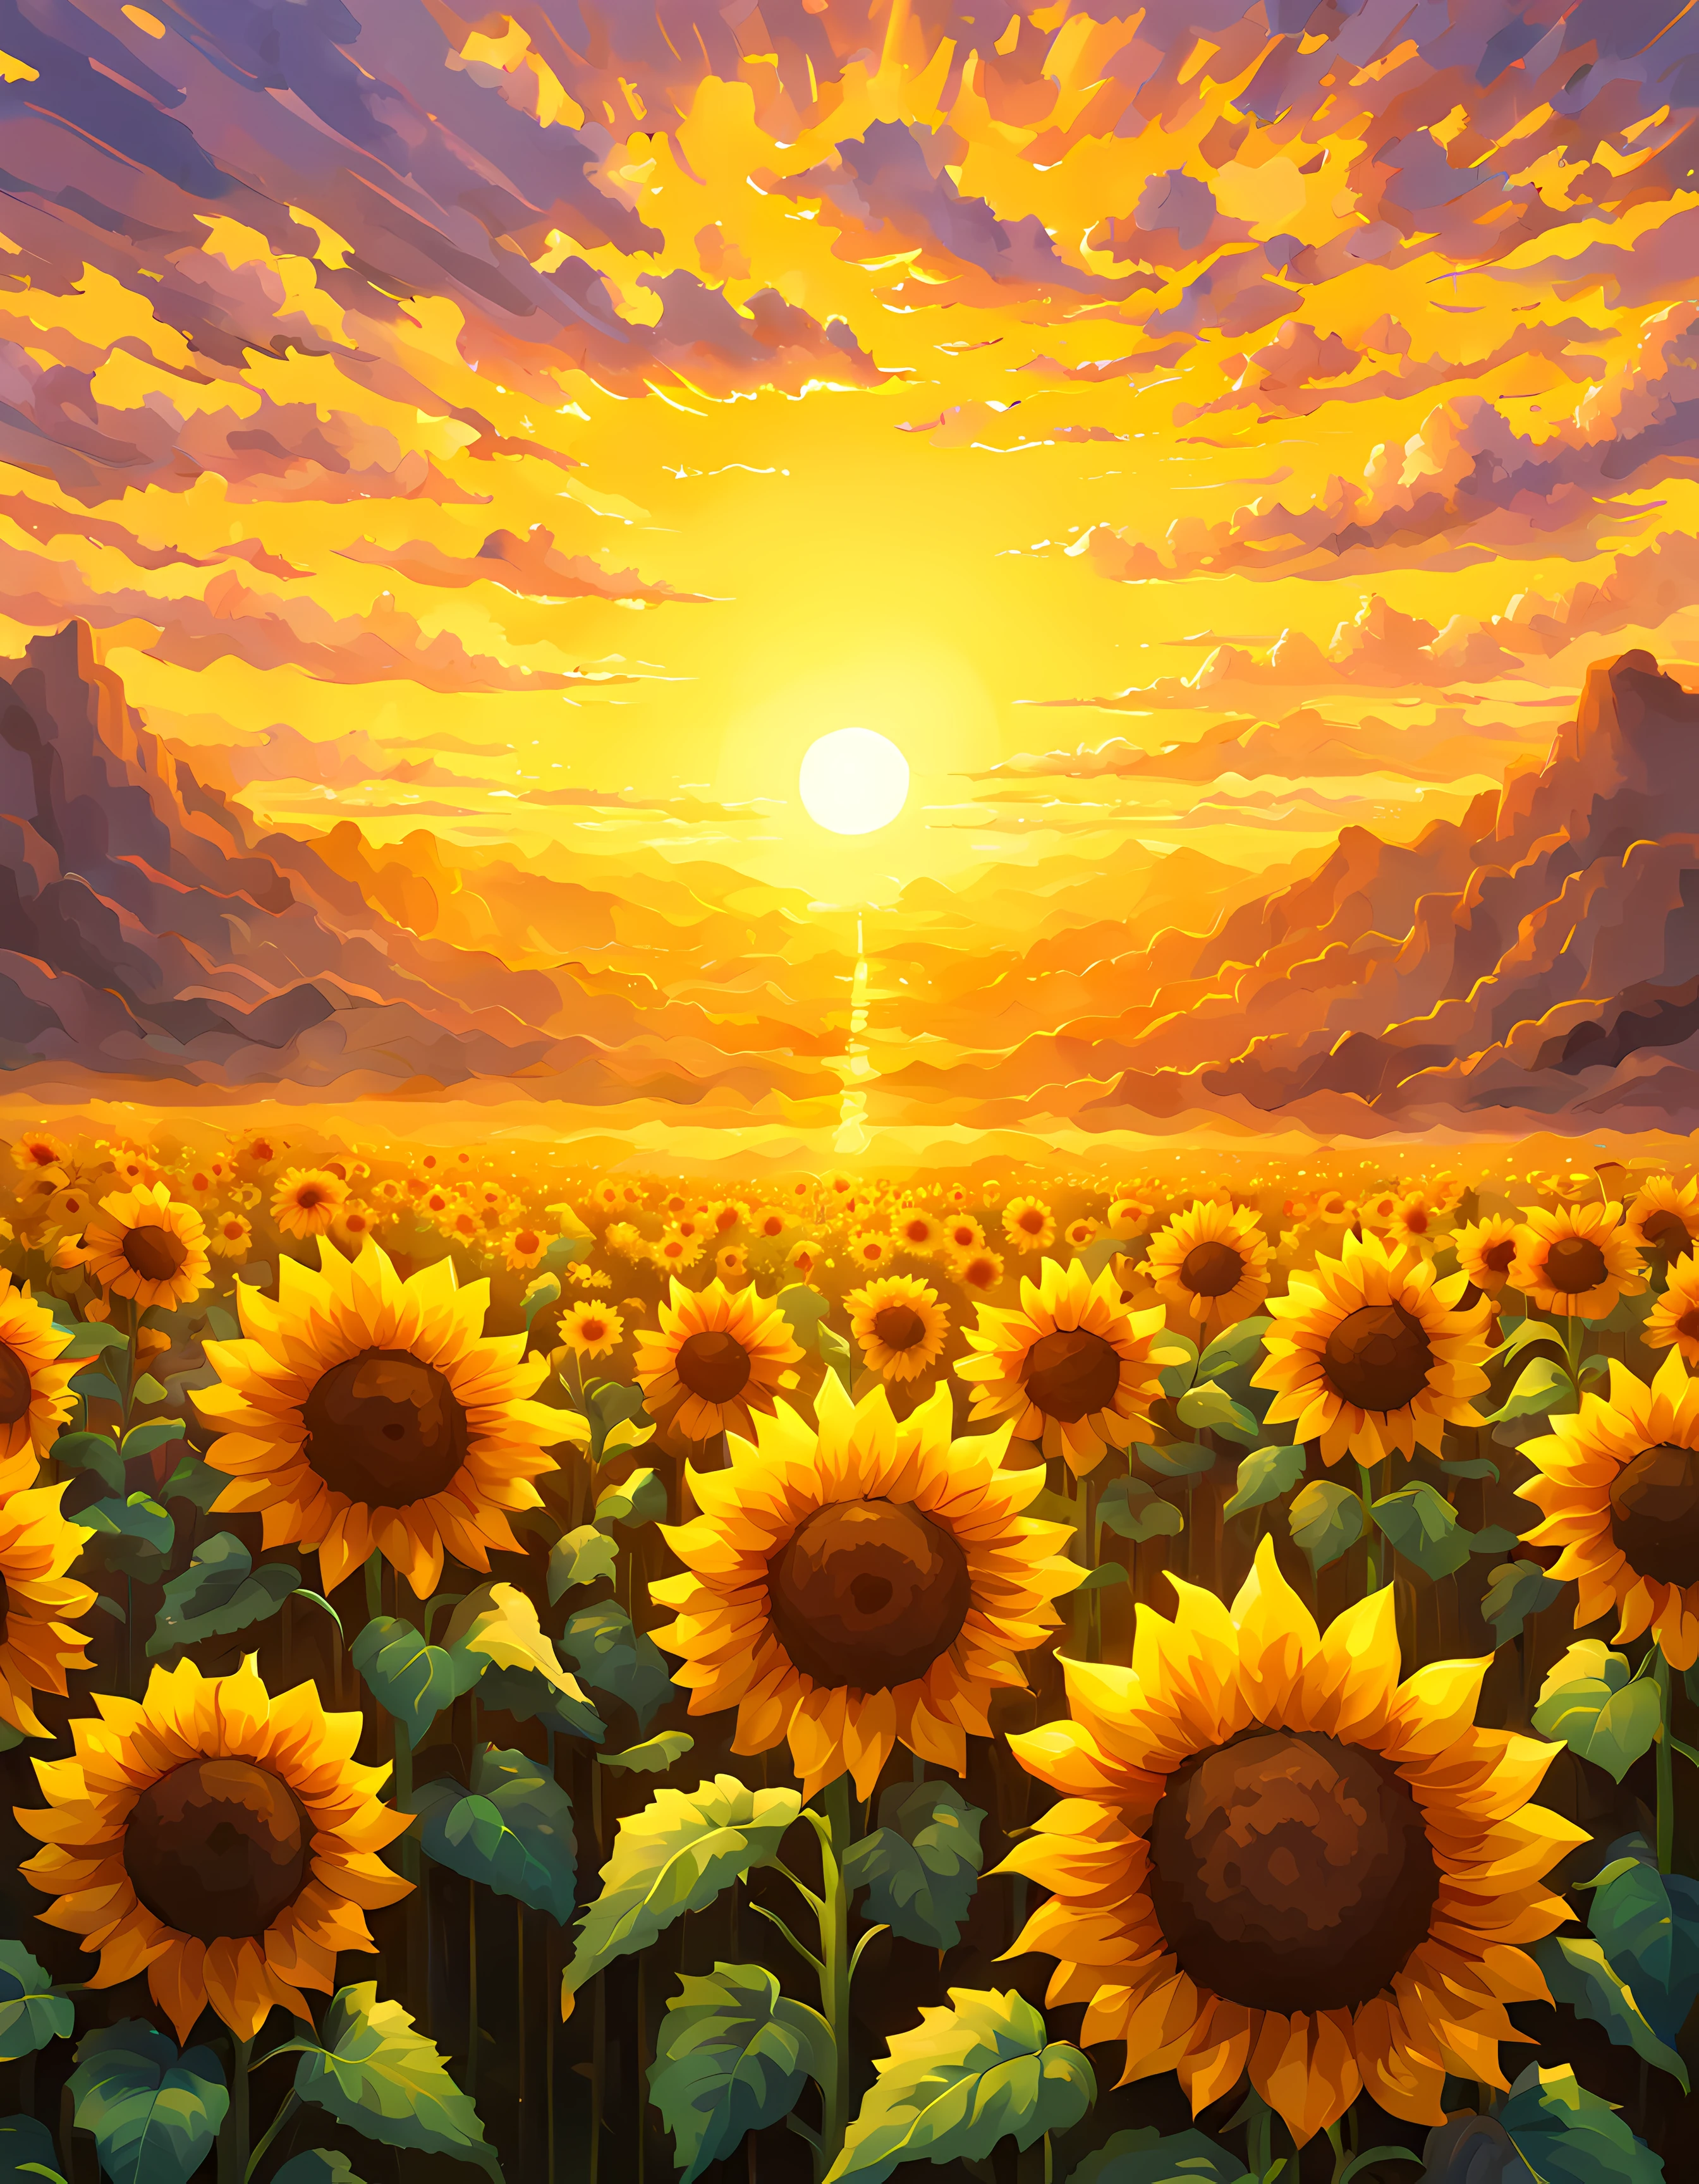 (像素藝術:1.3), (特寫:1.3), 广阔的田野沐浴在令人惊叹的黎明的柔和色调中, 在这个场景的中心矗立着一朵向日葵, 充满活力的黄色花瓣被金色的阳光照亮, 空气中弥漫着一丝魔力，让向日葵散发出空灵的光芒, 吸收太阳本身的能量和热量, 敬畏和驚奇的感覺, 自然的美丽和力量, 更多詳情